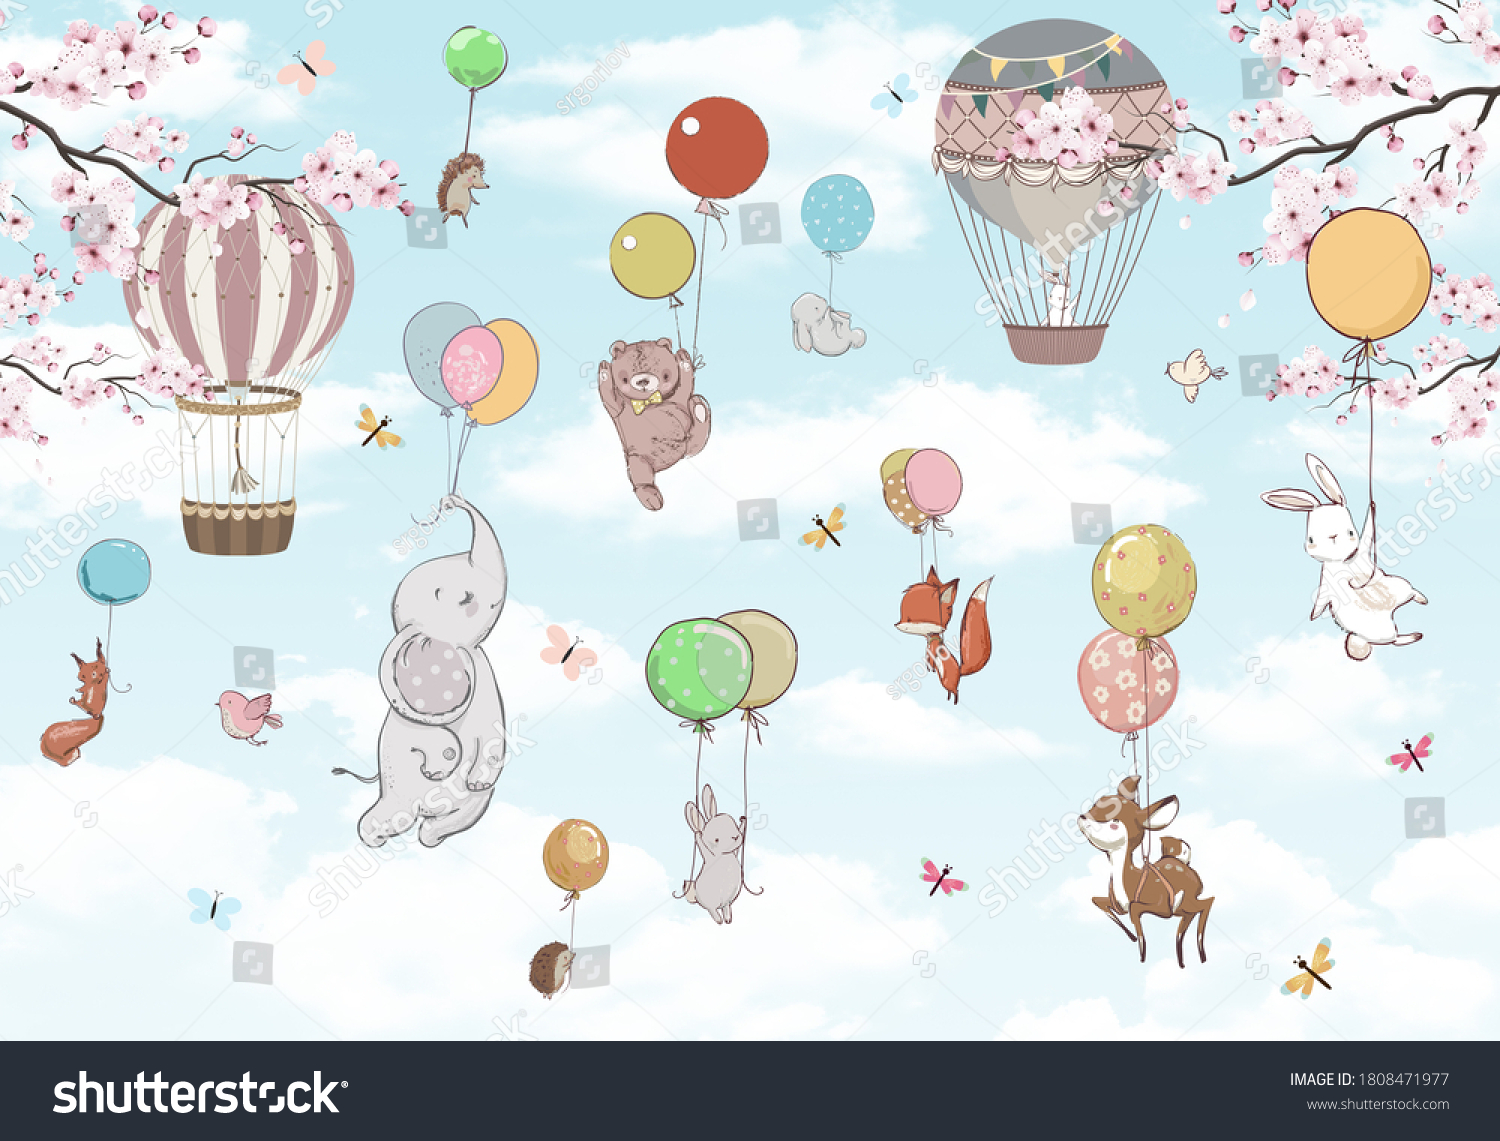 子ども用の壁紙 風船の上の空に動物 のイラスト素材 Shutterstock